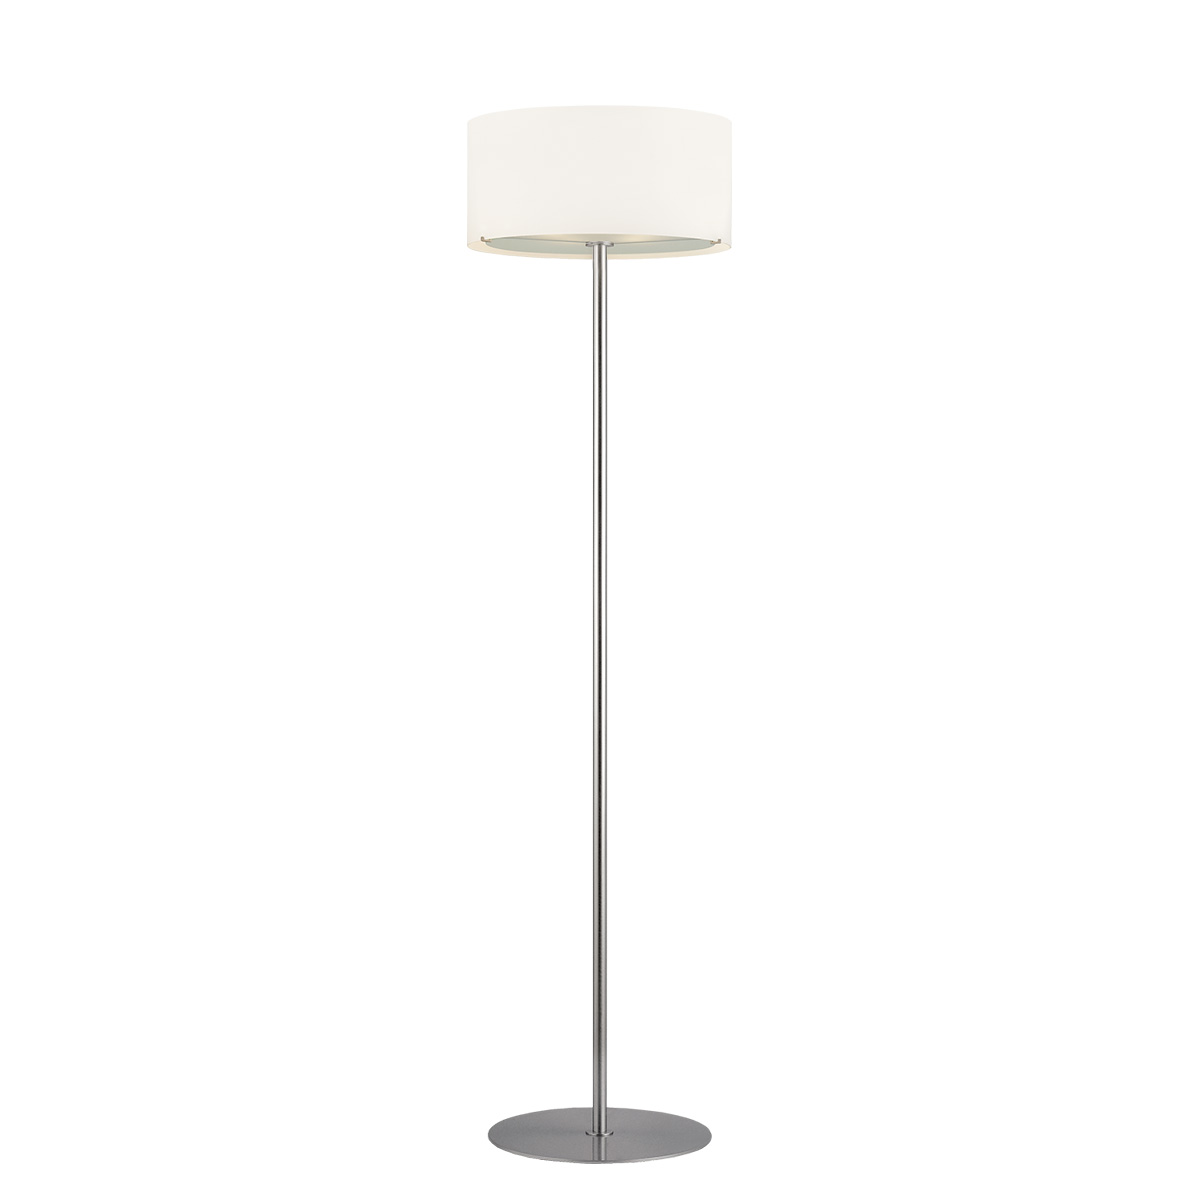 Φωτιστικό δαπέδου Μουράνο ΚΥΛΙΝΔΡΟΙ modern white Murano floor lamp